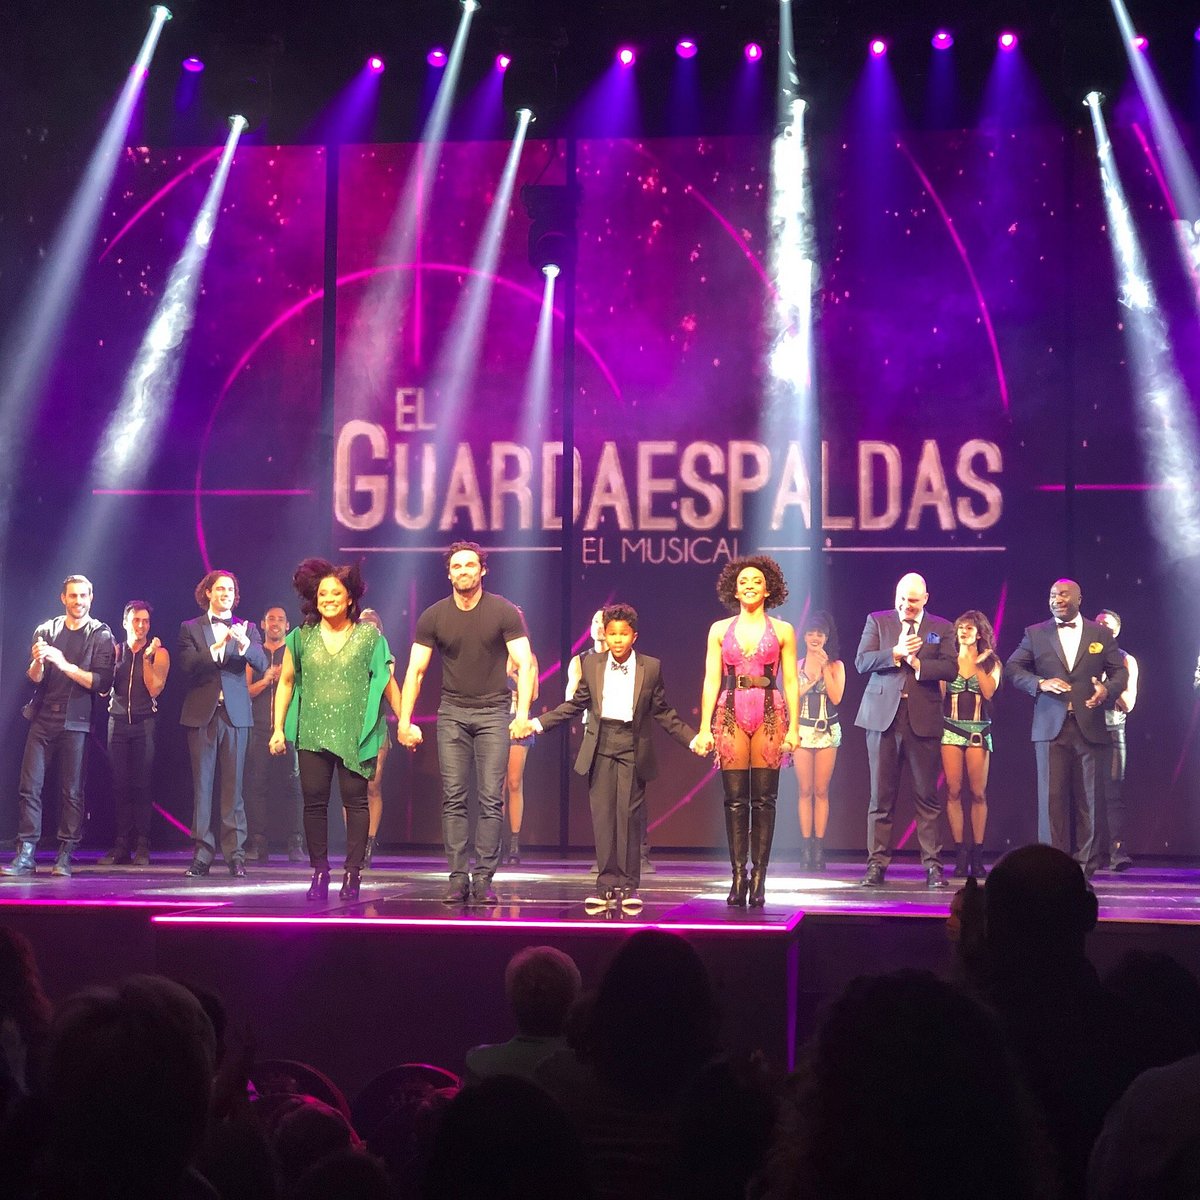 El Guardaespaldas - El Musical en Granada